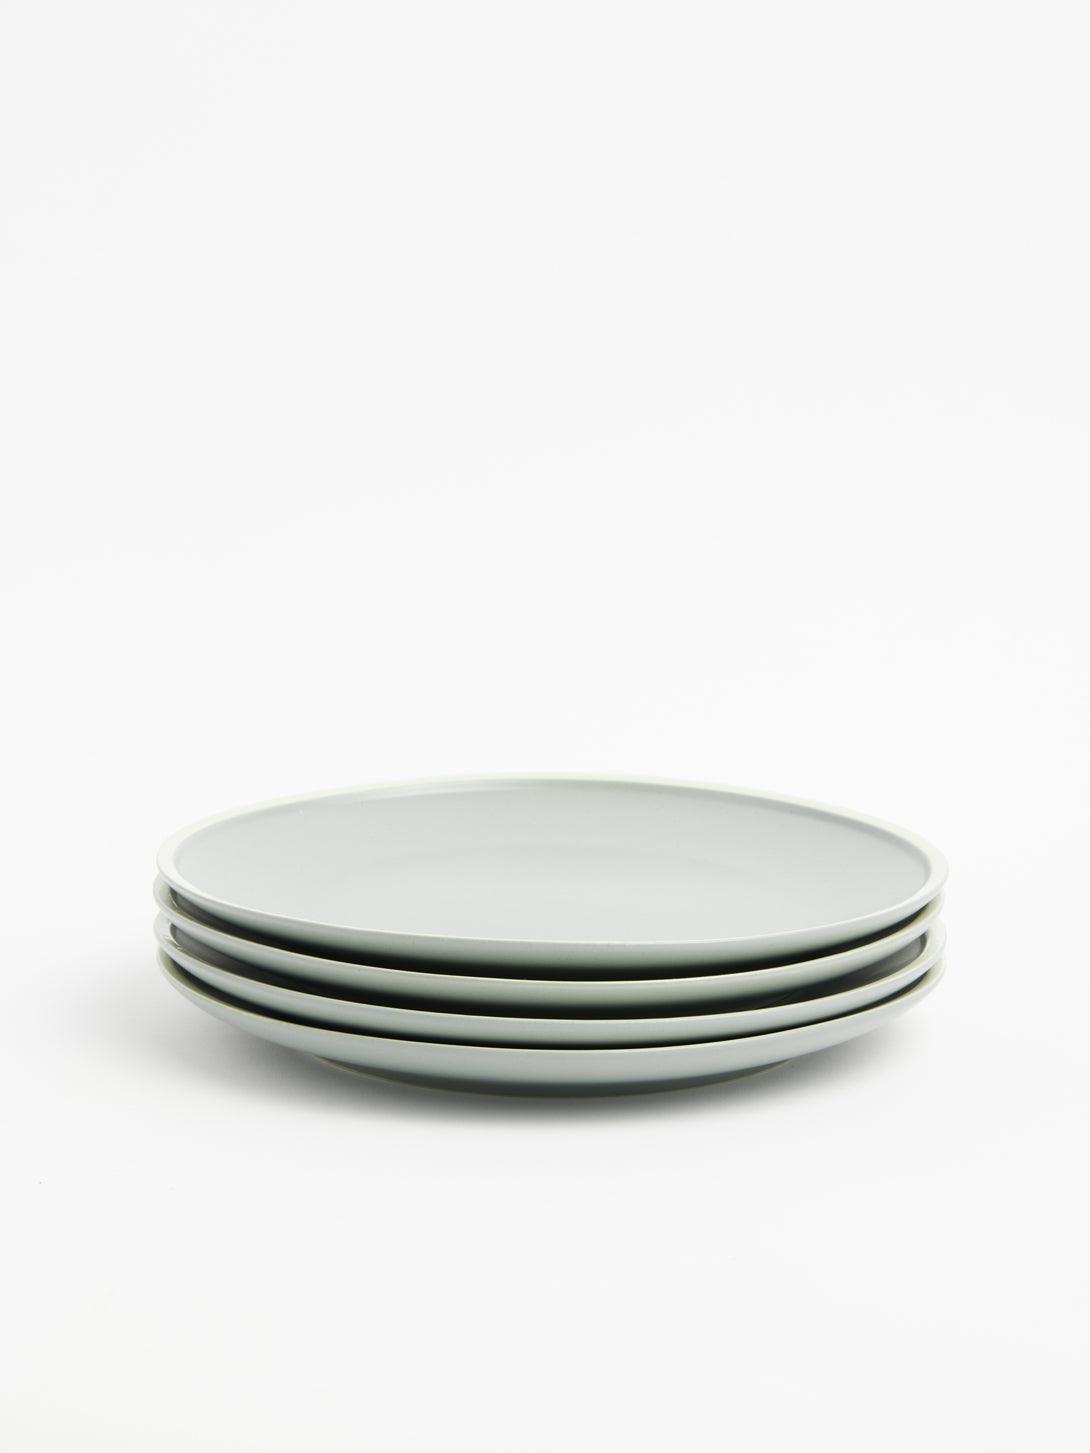 Morandi Ceramic Tableware-Green